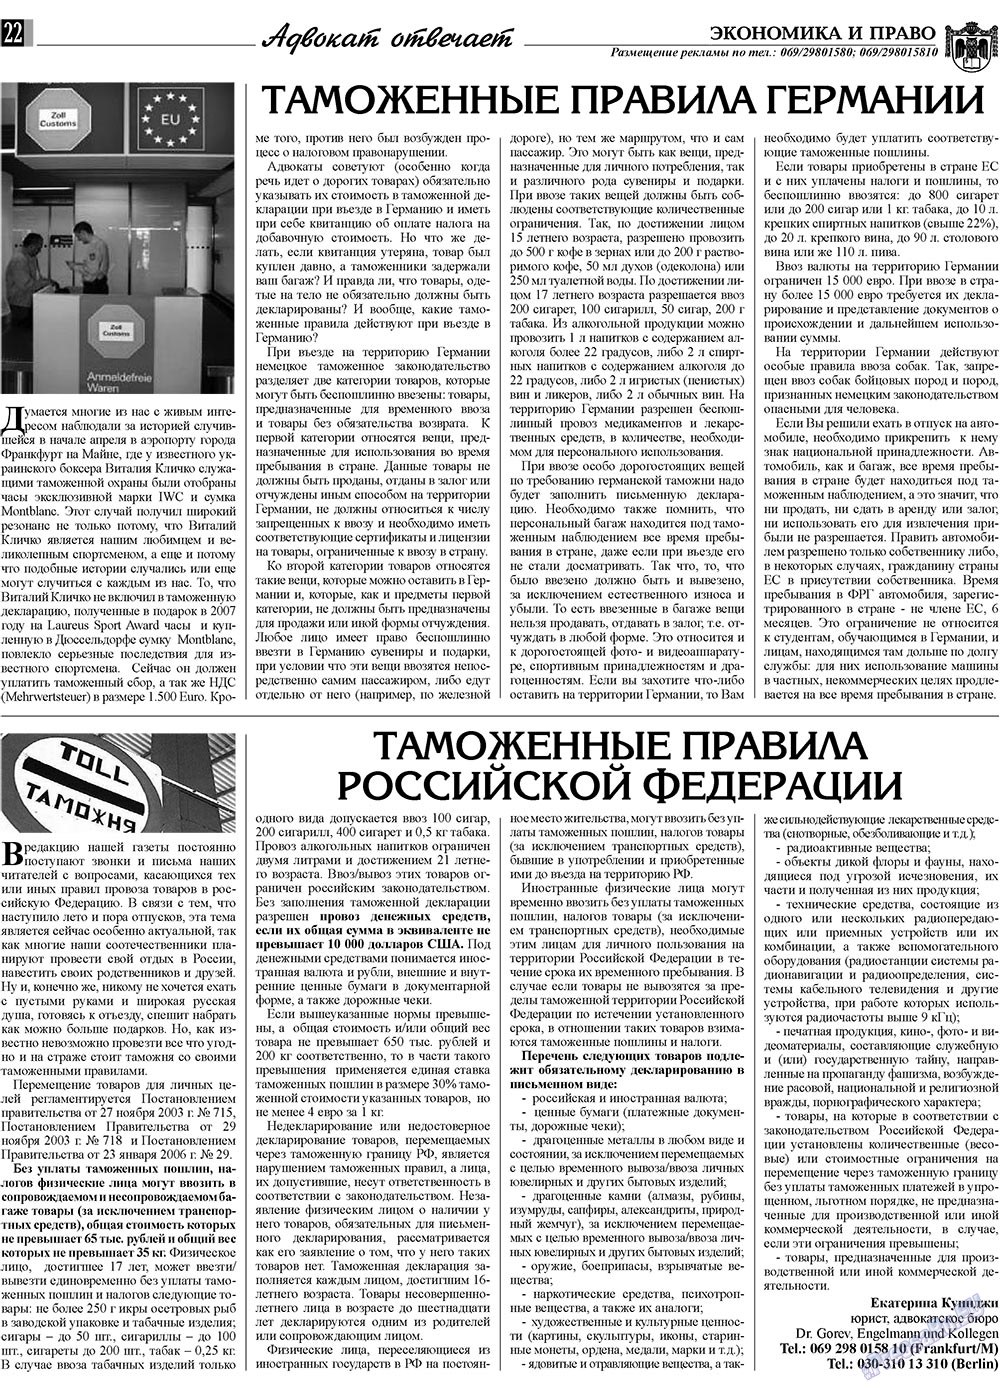 Экономика и право, газета. 2009 №7 стр.22